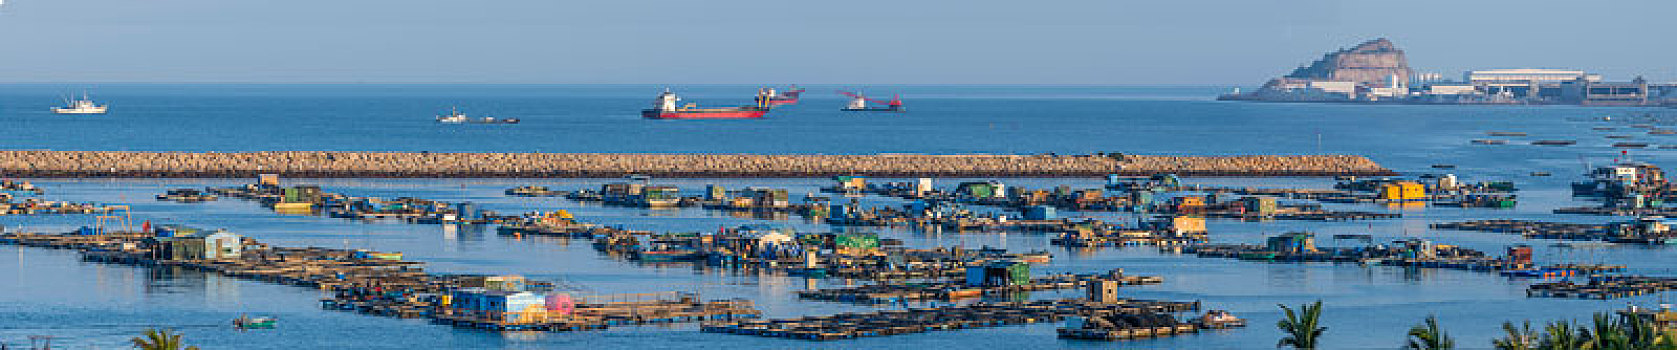 桂山渔港